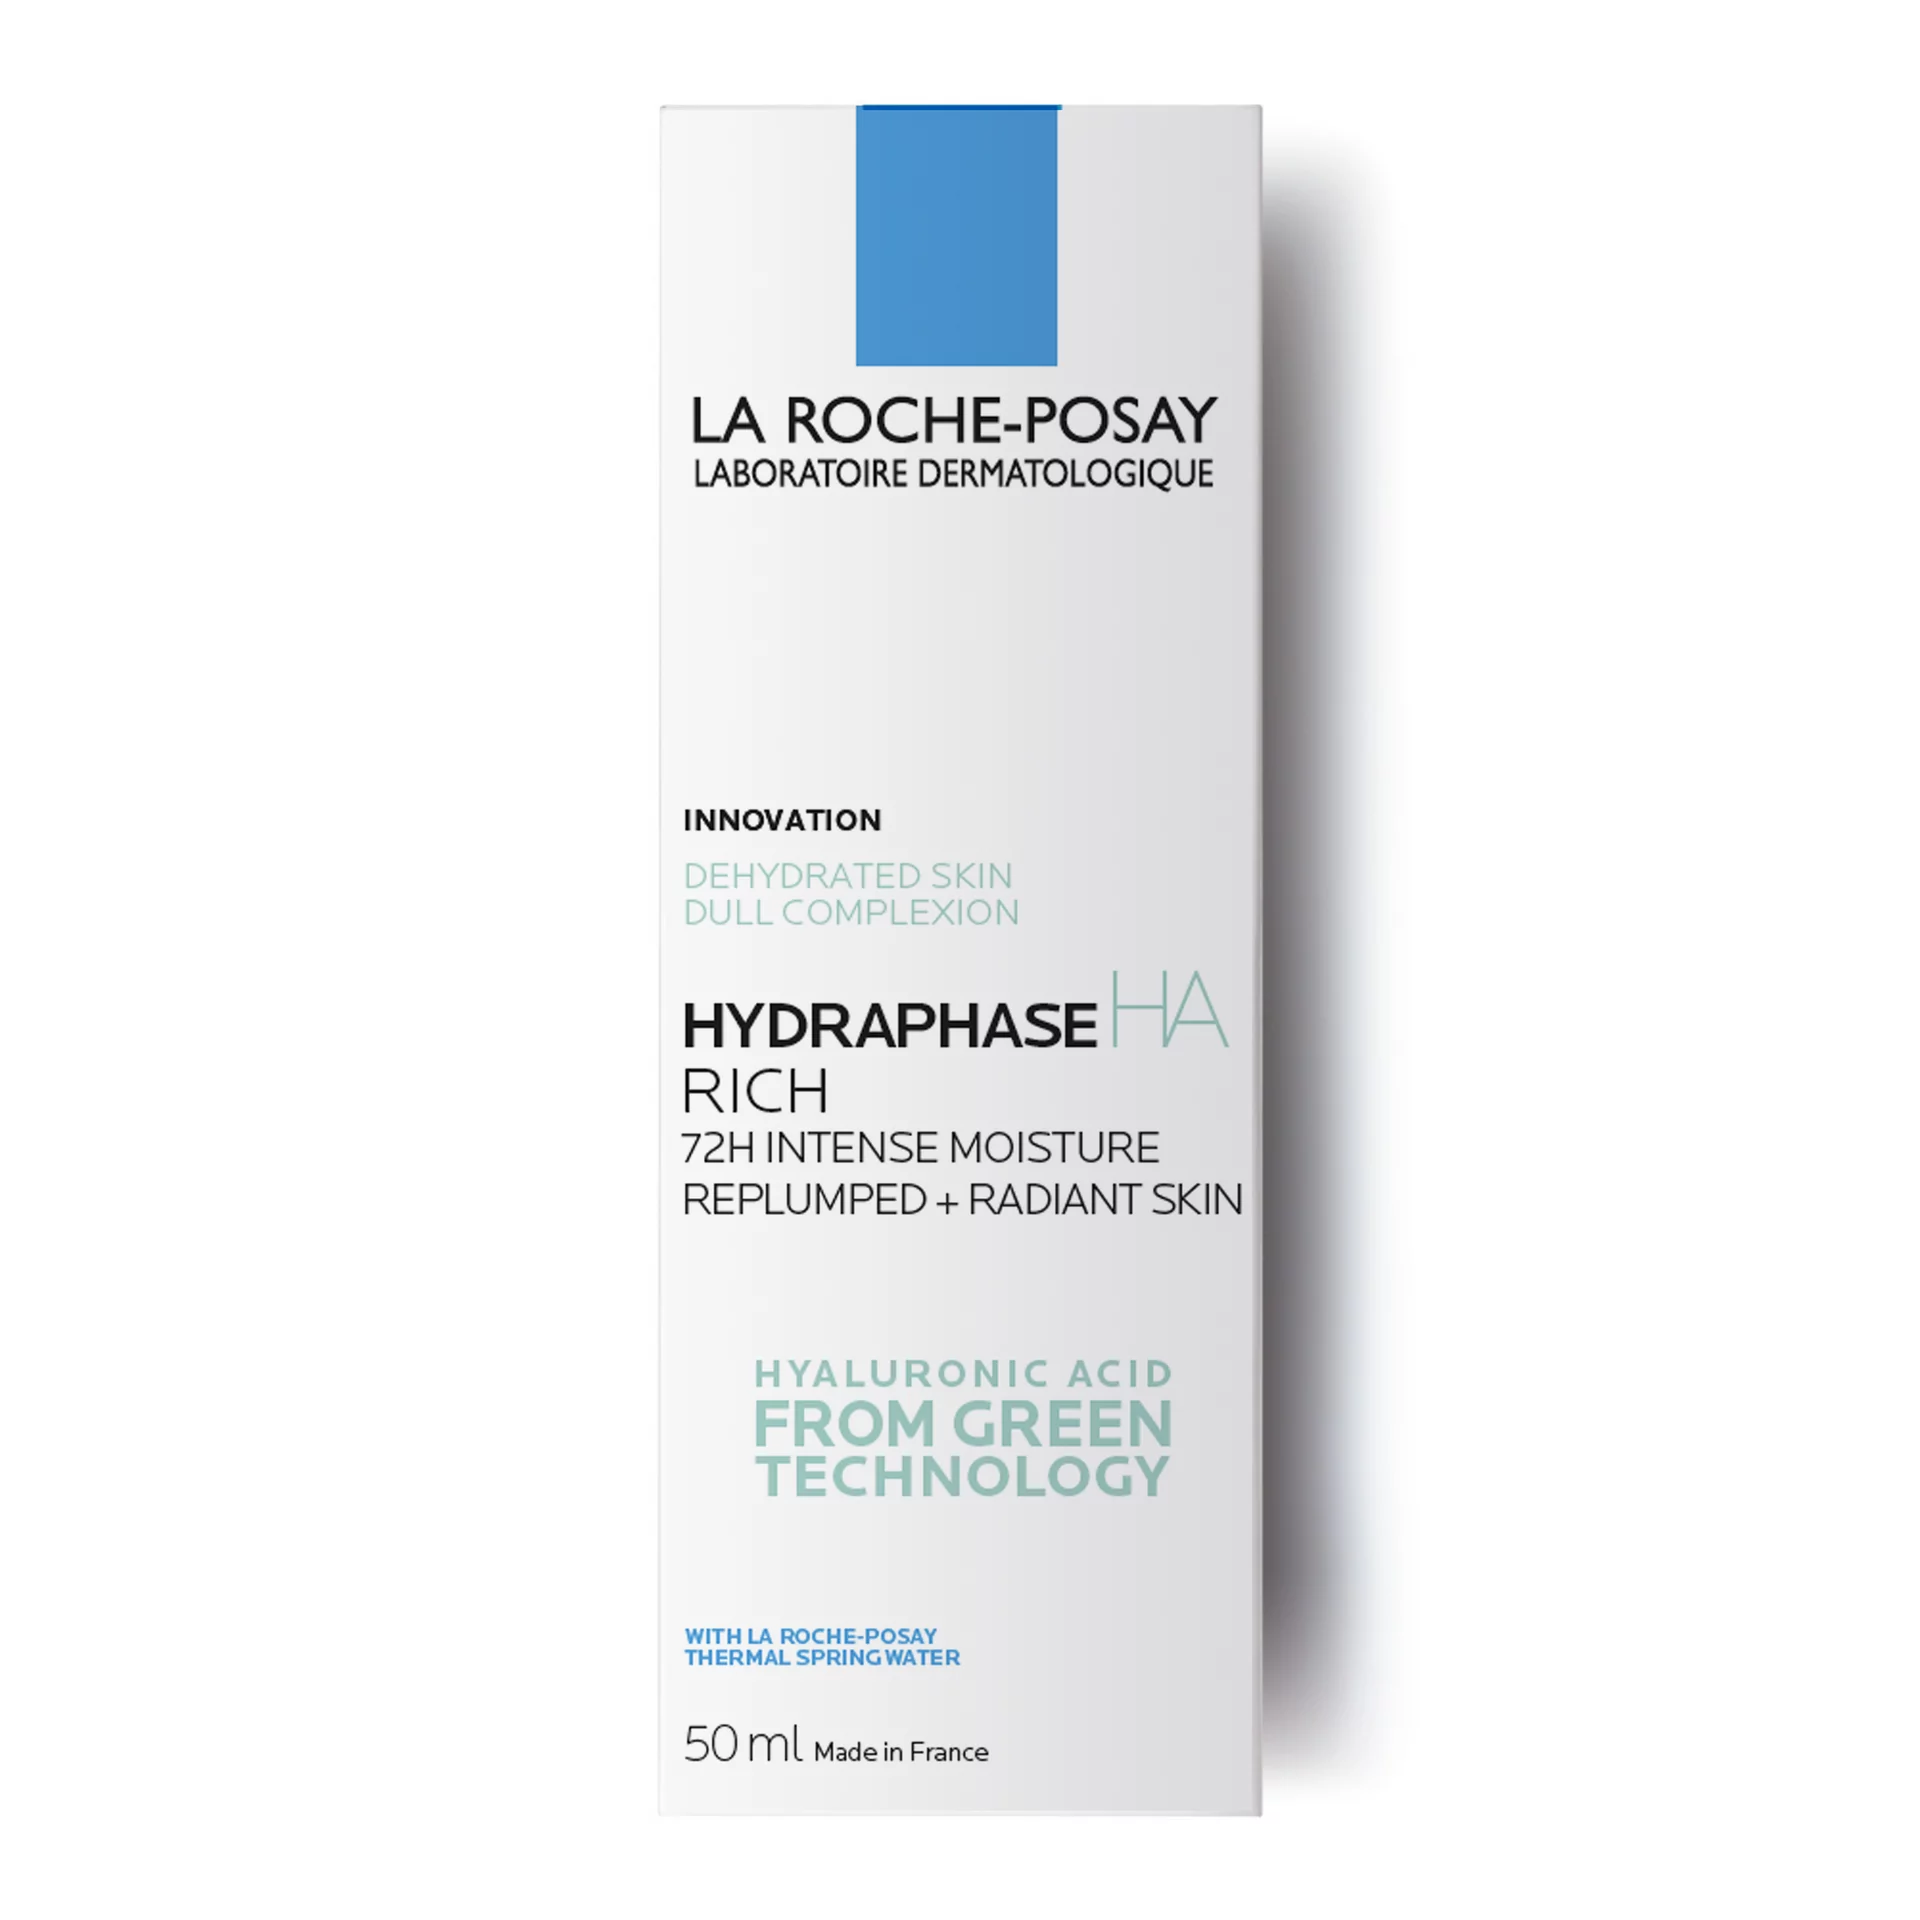 La Roche-Posay Posay Posay Hydraphase HA Rich krem do twarzy na dzień 50 ml dla kobiet